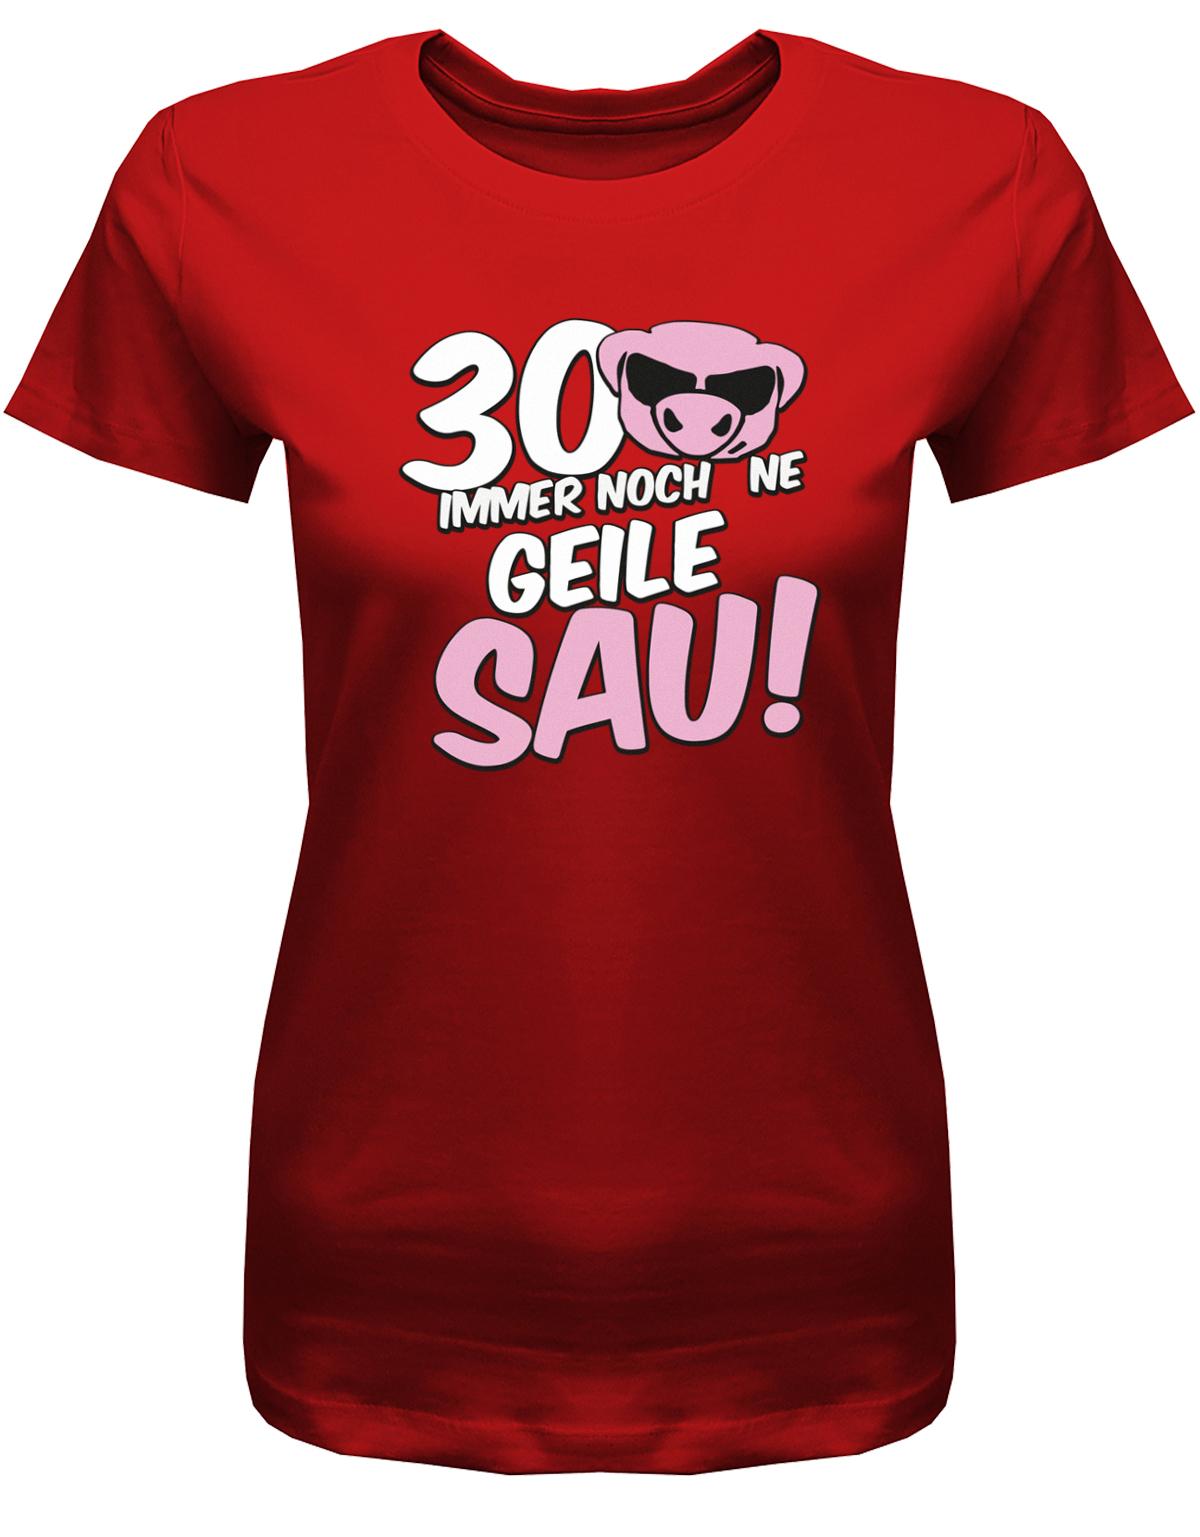 Lustiges T-Shirt zum 30 Geburtstag für die Frau Bedruckt mit 30 Immer noch 'ne geile Sau! Sau mit Sonnenbrille Rot